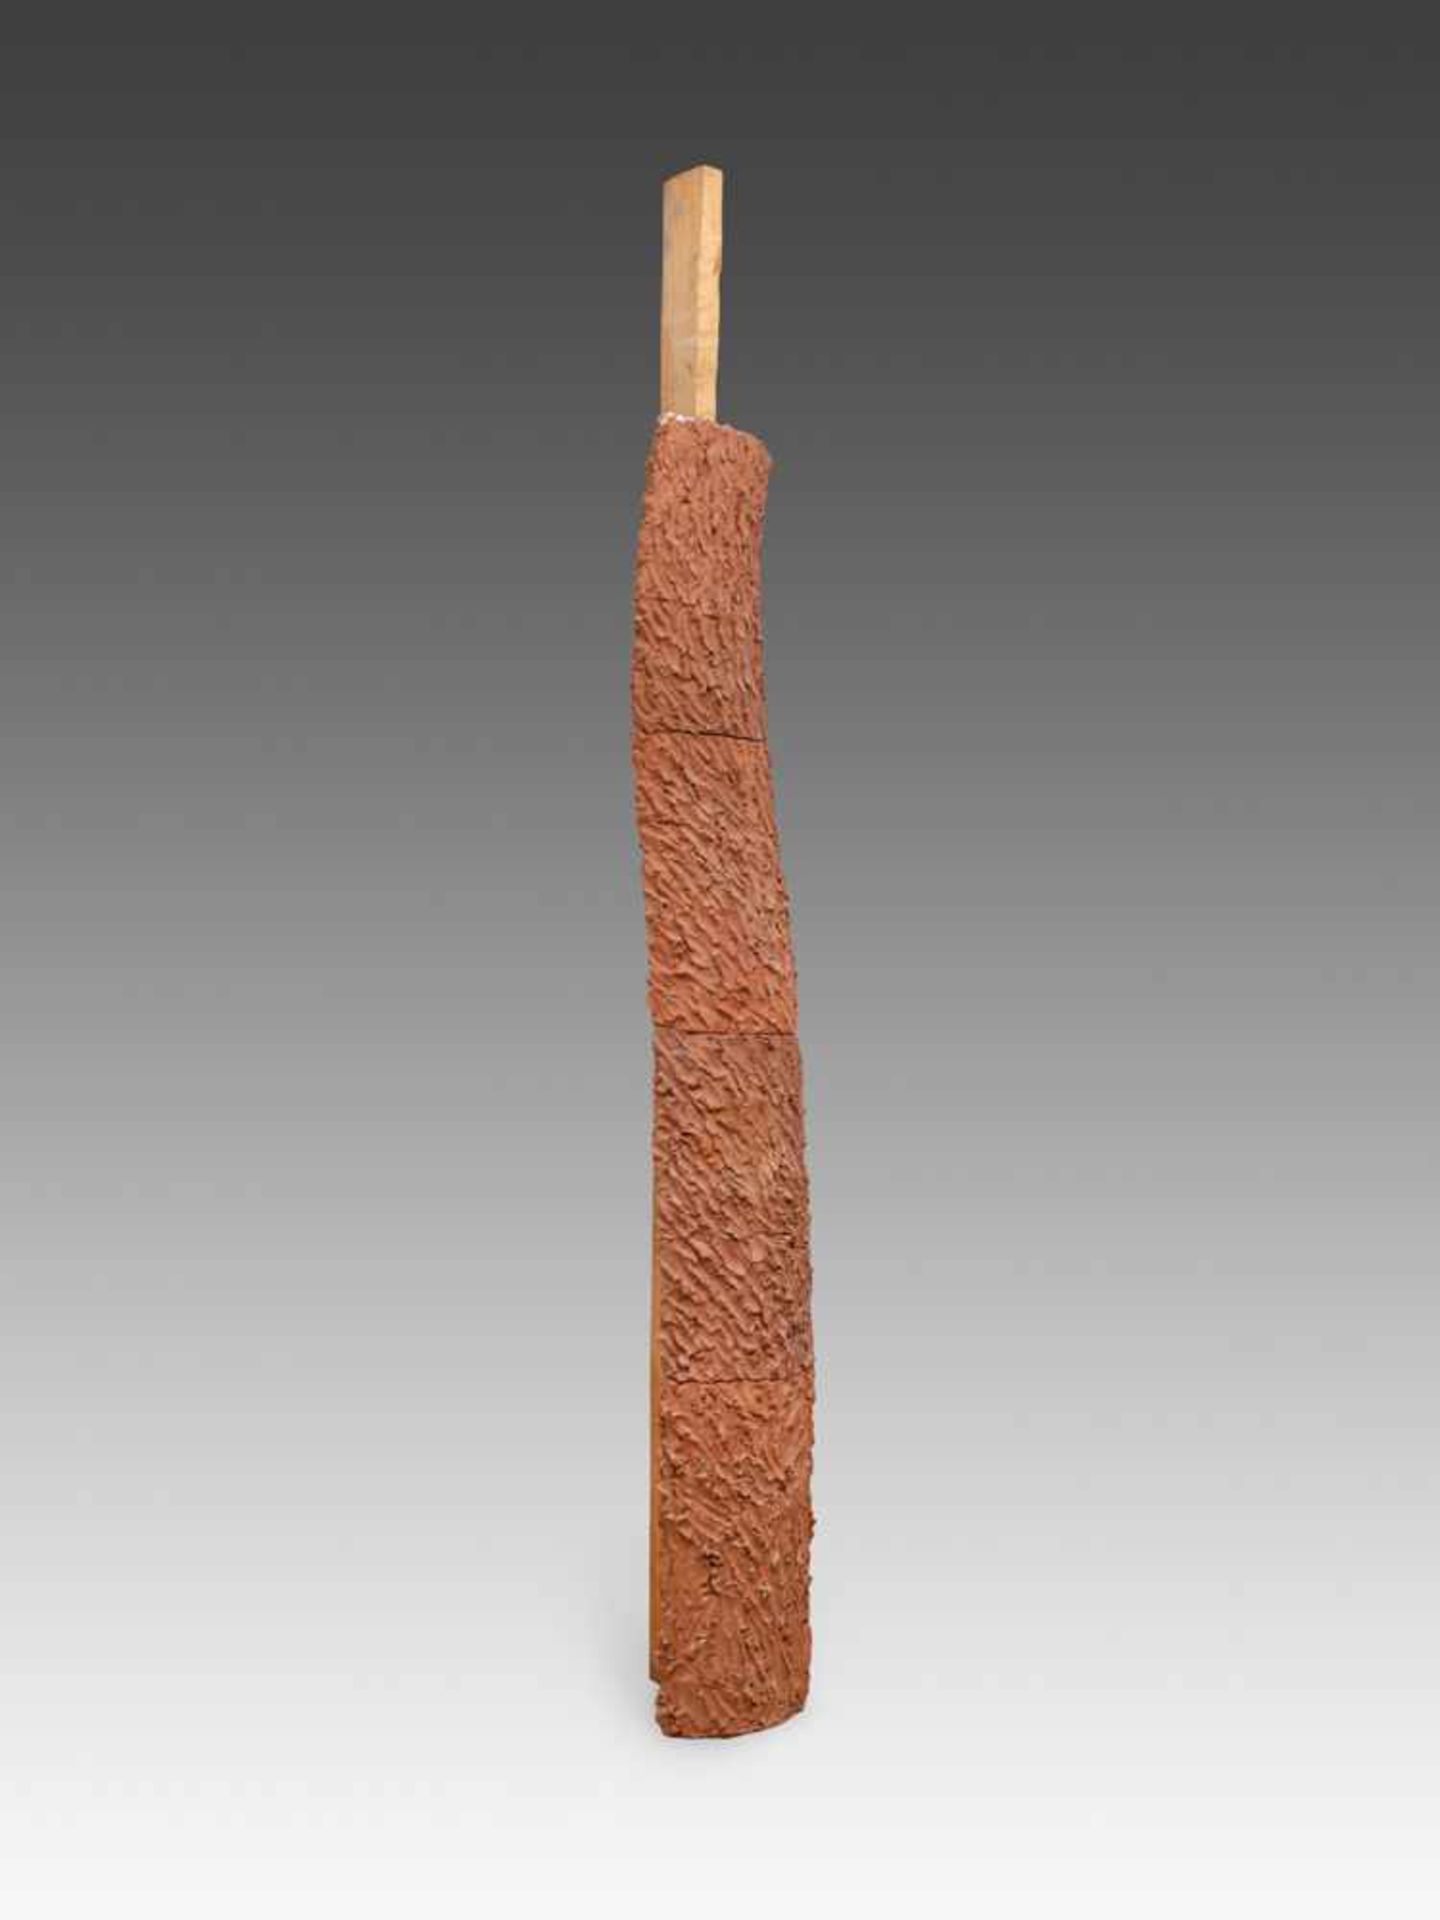 Giuseppe Penone*1947Ohne Titel1980Holz und Ton, gebrannt (4 aufeinander gestellte Keramikteile und